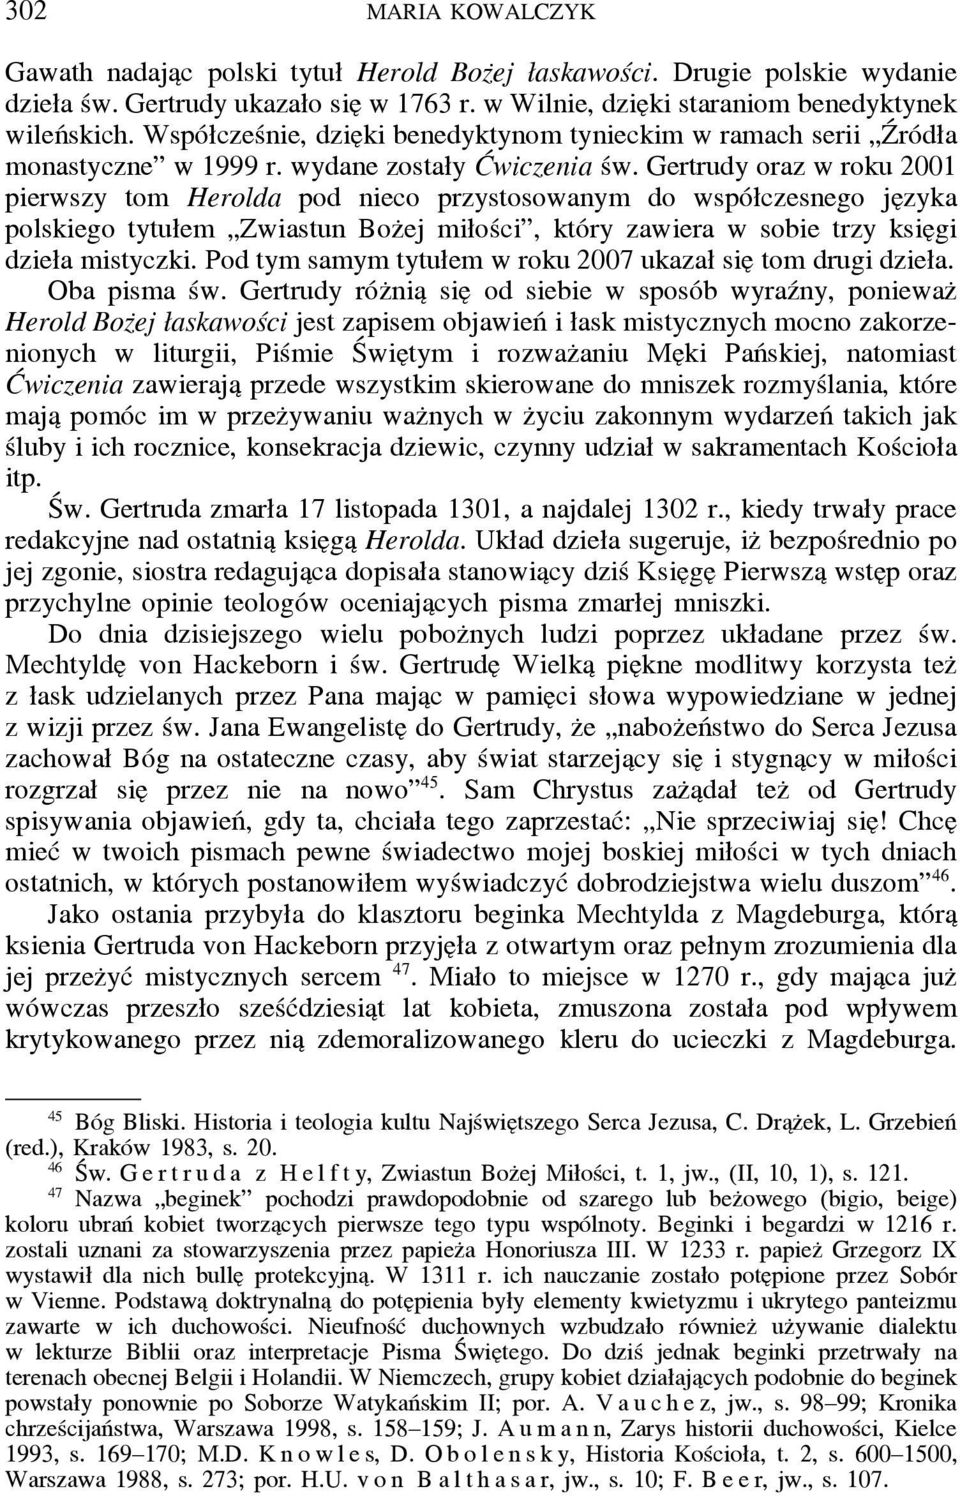 Gertrudy oraz w roku 2001 pierwszy tom Herolda pod nieco przystosowanym do współczesnego je zyka polskiego tytułem Zwiastun Boz ej miłości, który zawiera w sobie trzy ksie gi dzieła mistyczki.